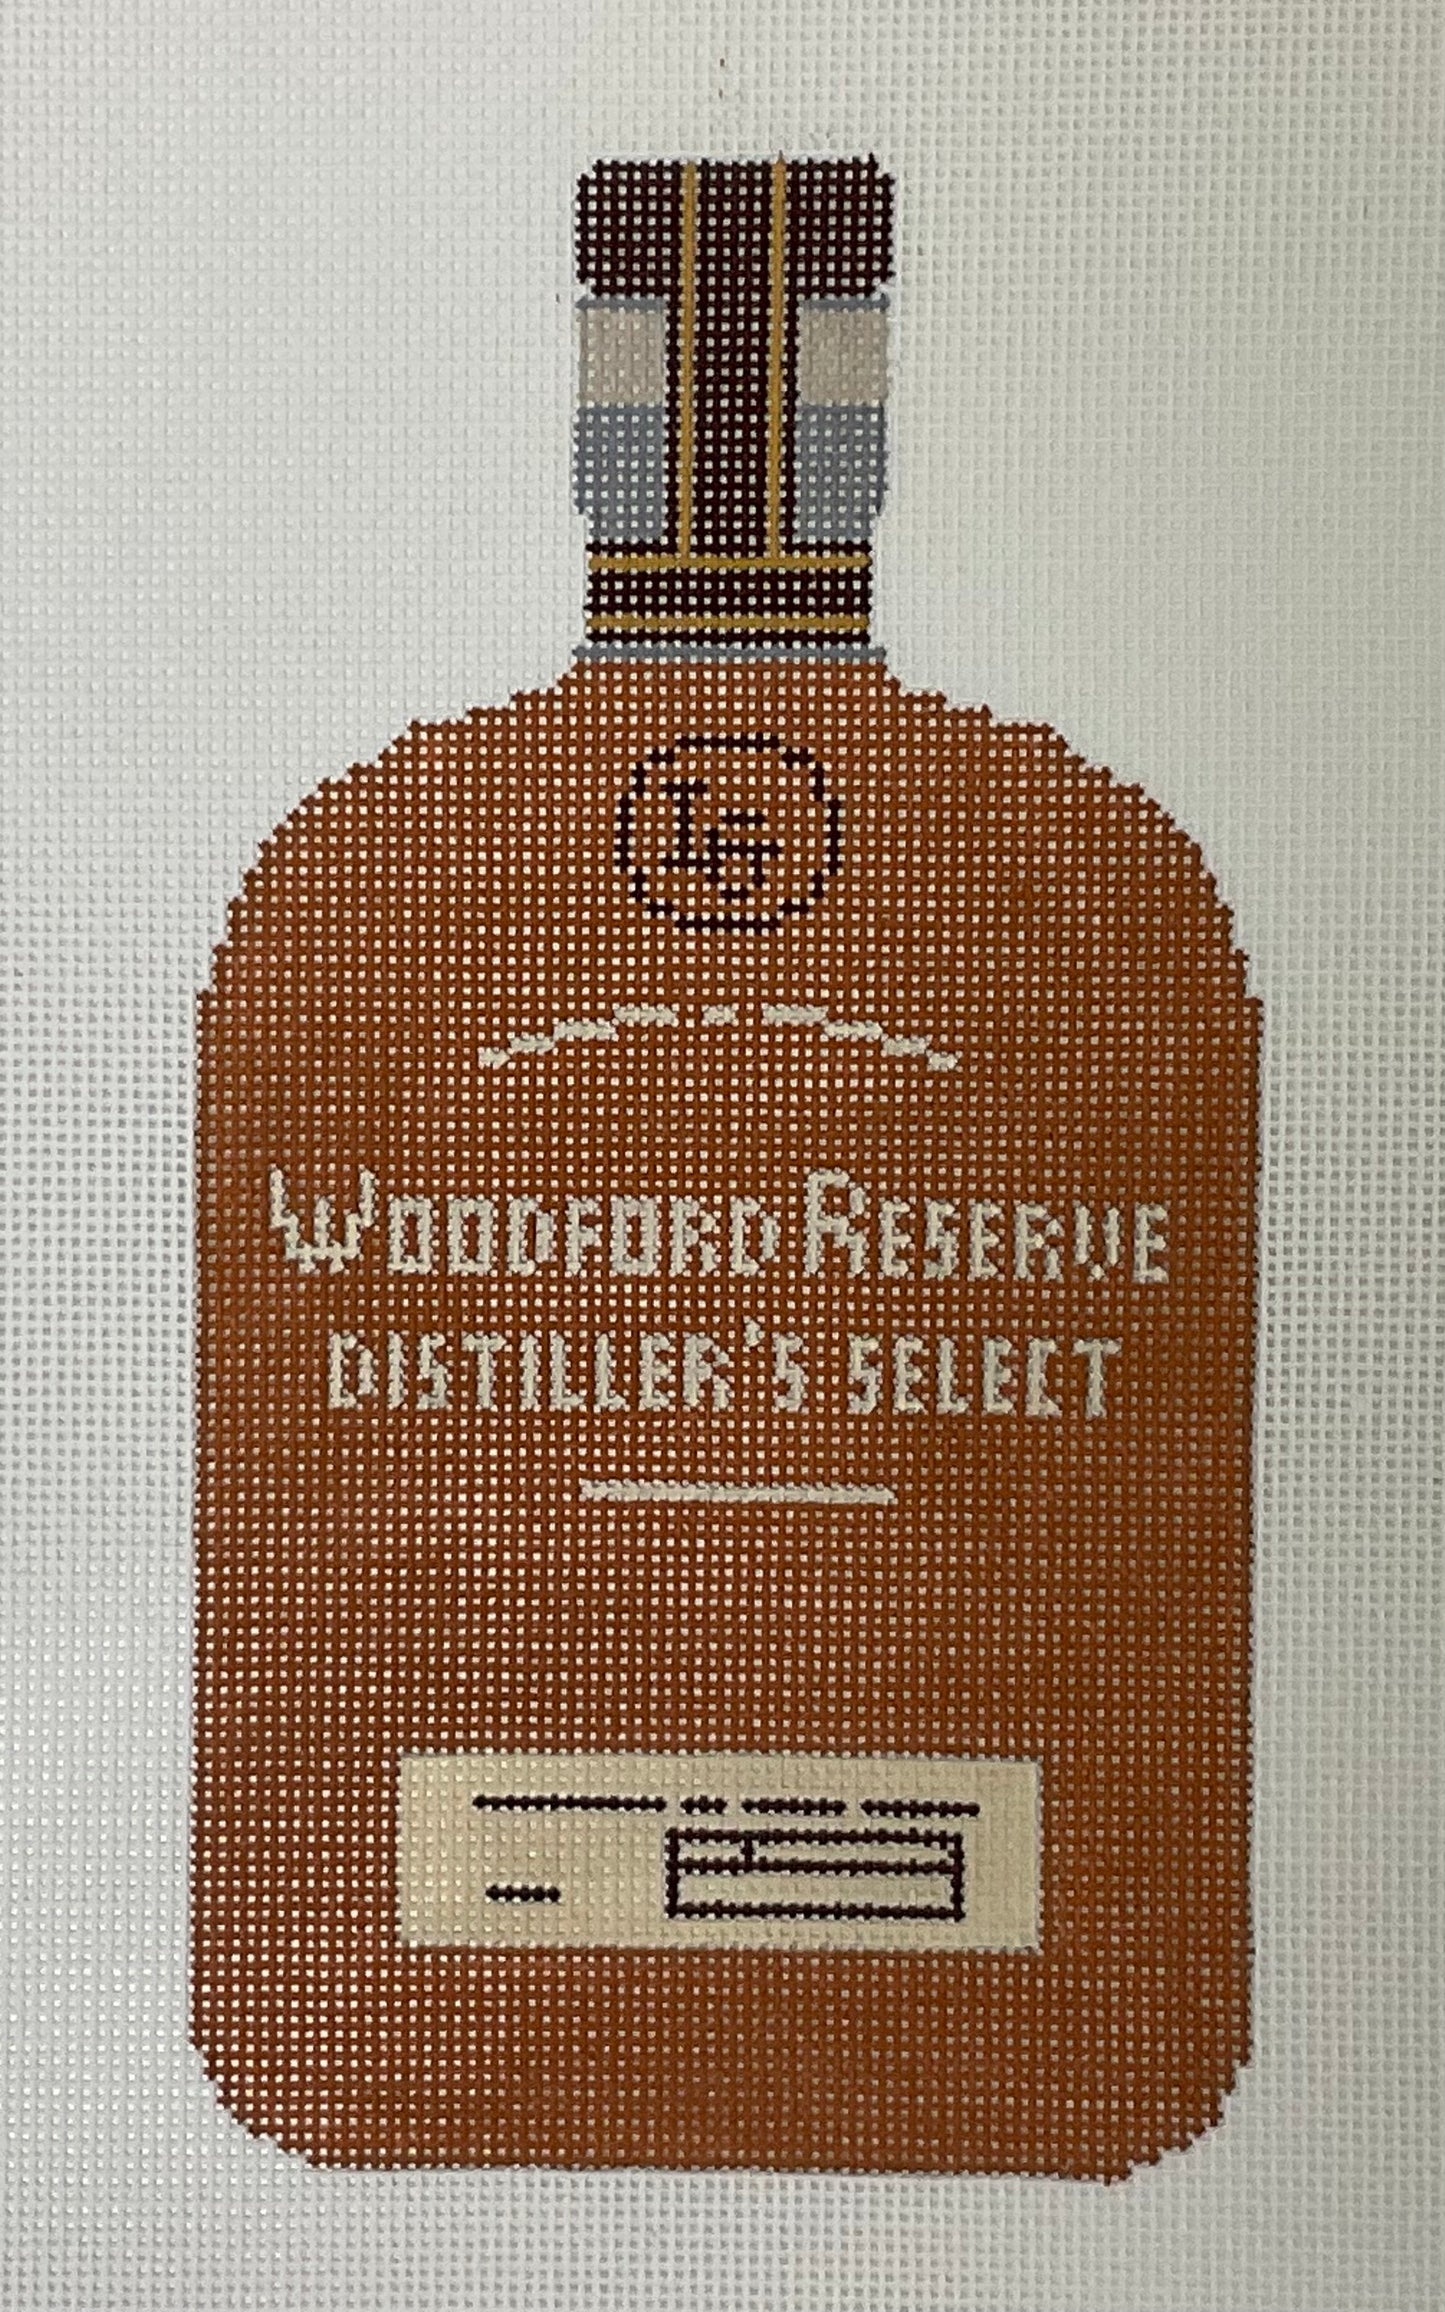 Woodford Reserve Bottle